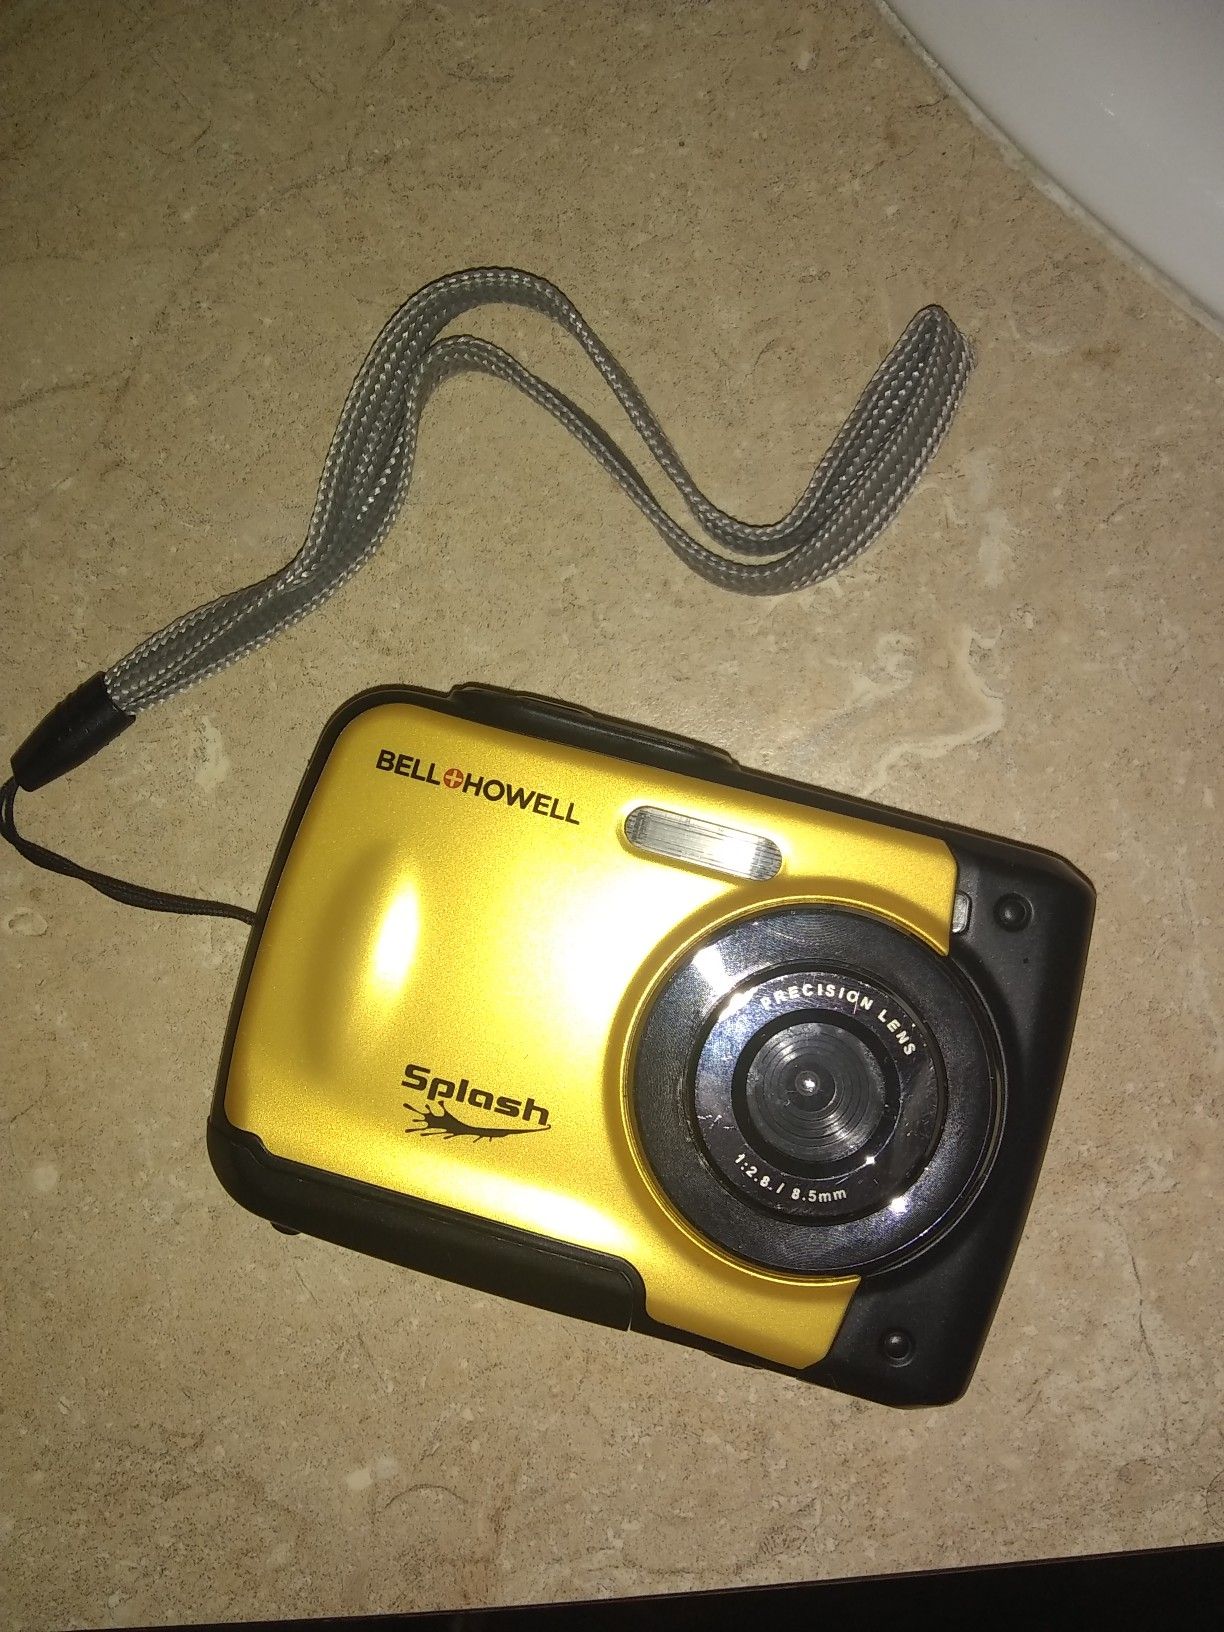 Bell&Howell waterproof digital camera